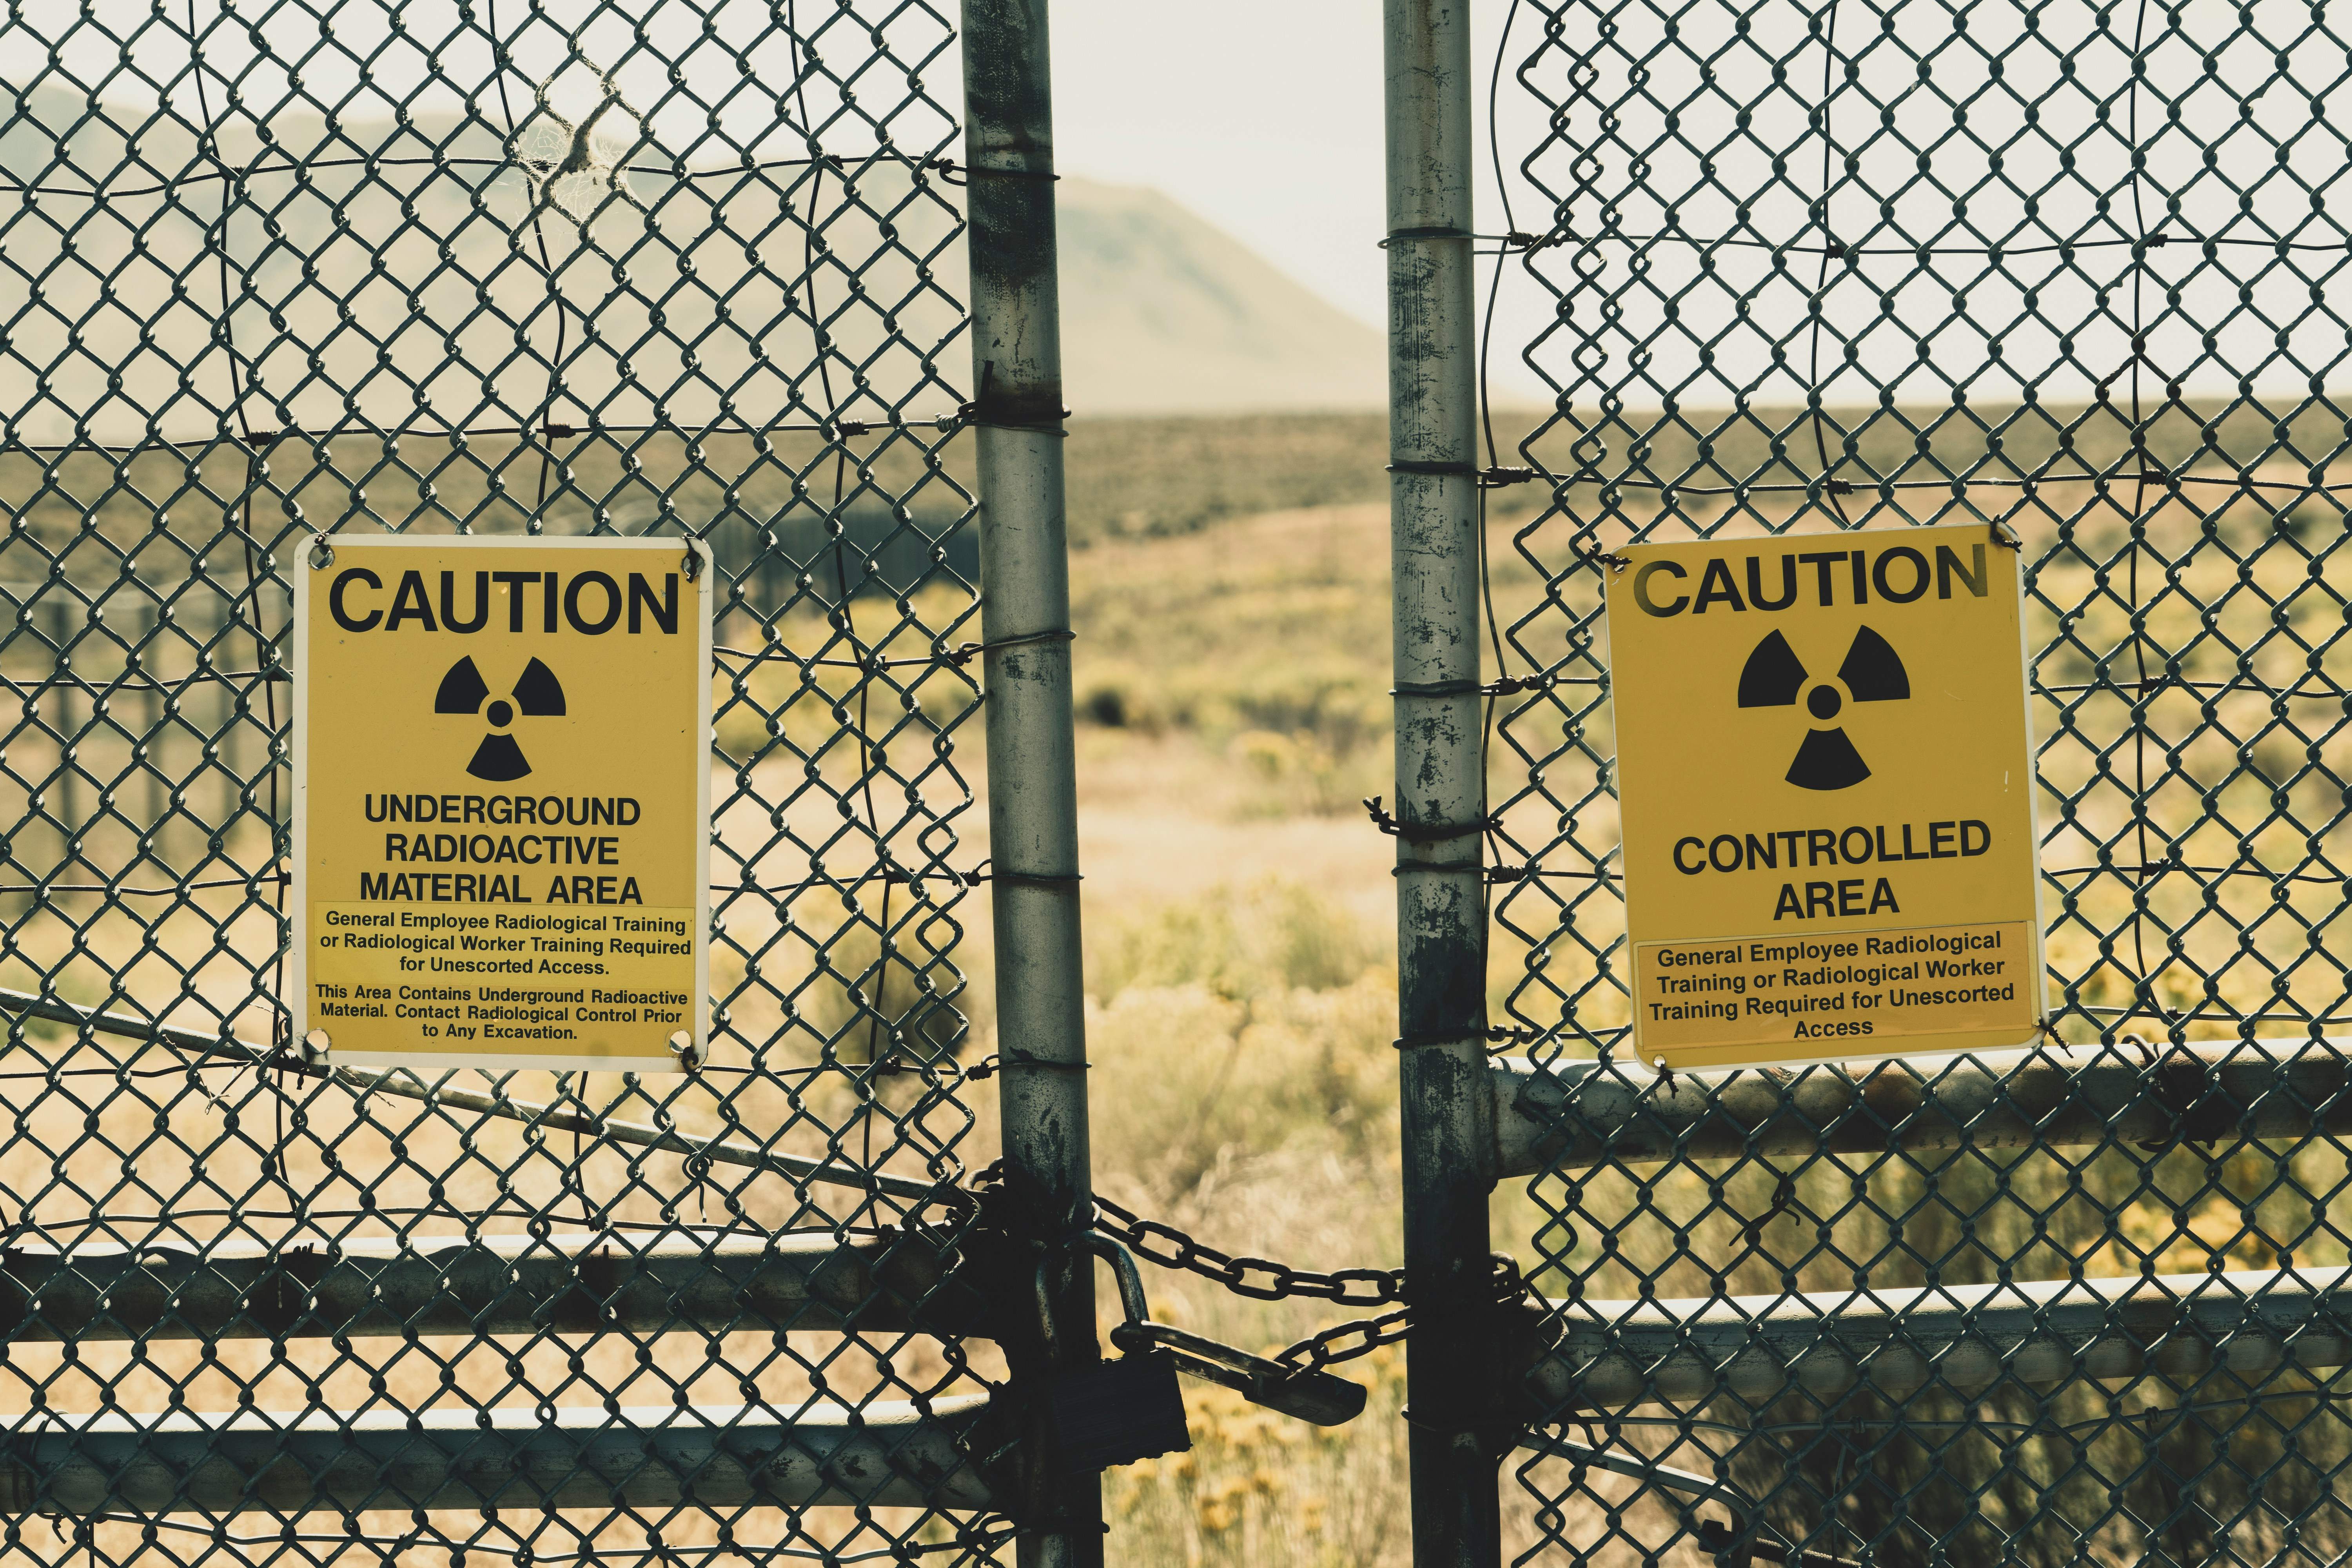 Bomba nuclear: ¿cuáles serían los lugares más seguros en caso de explosión?